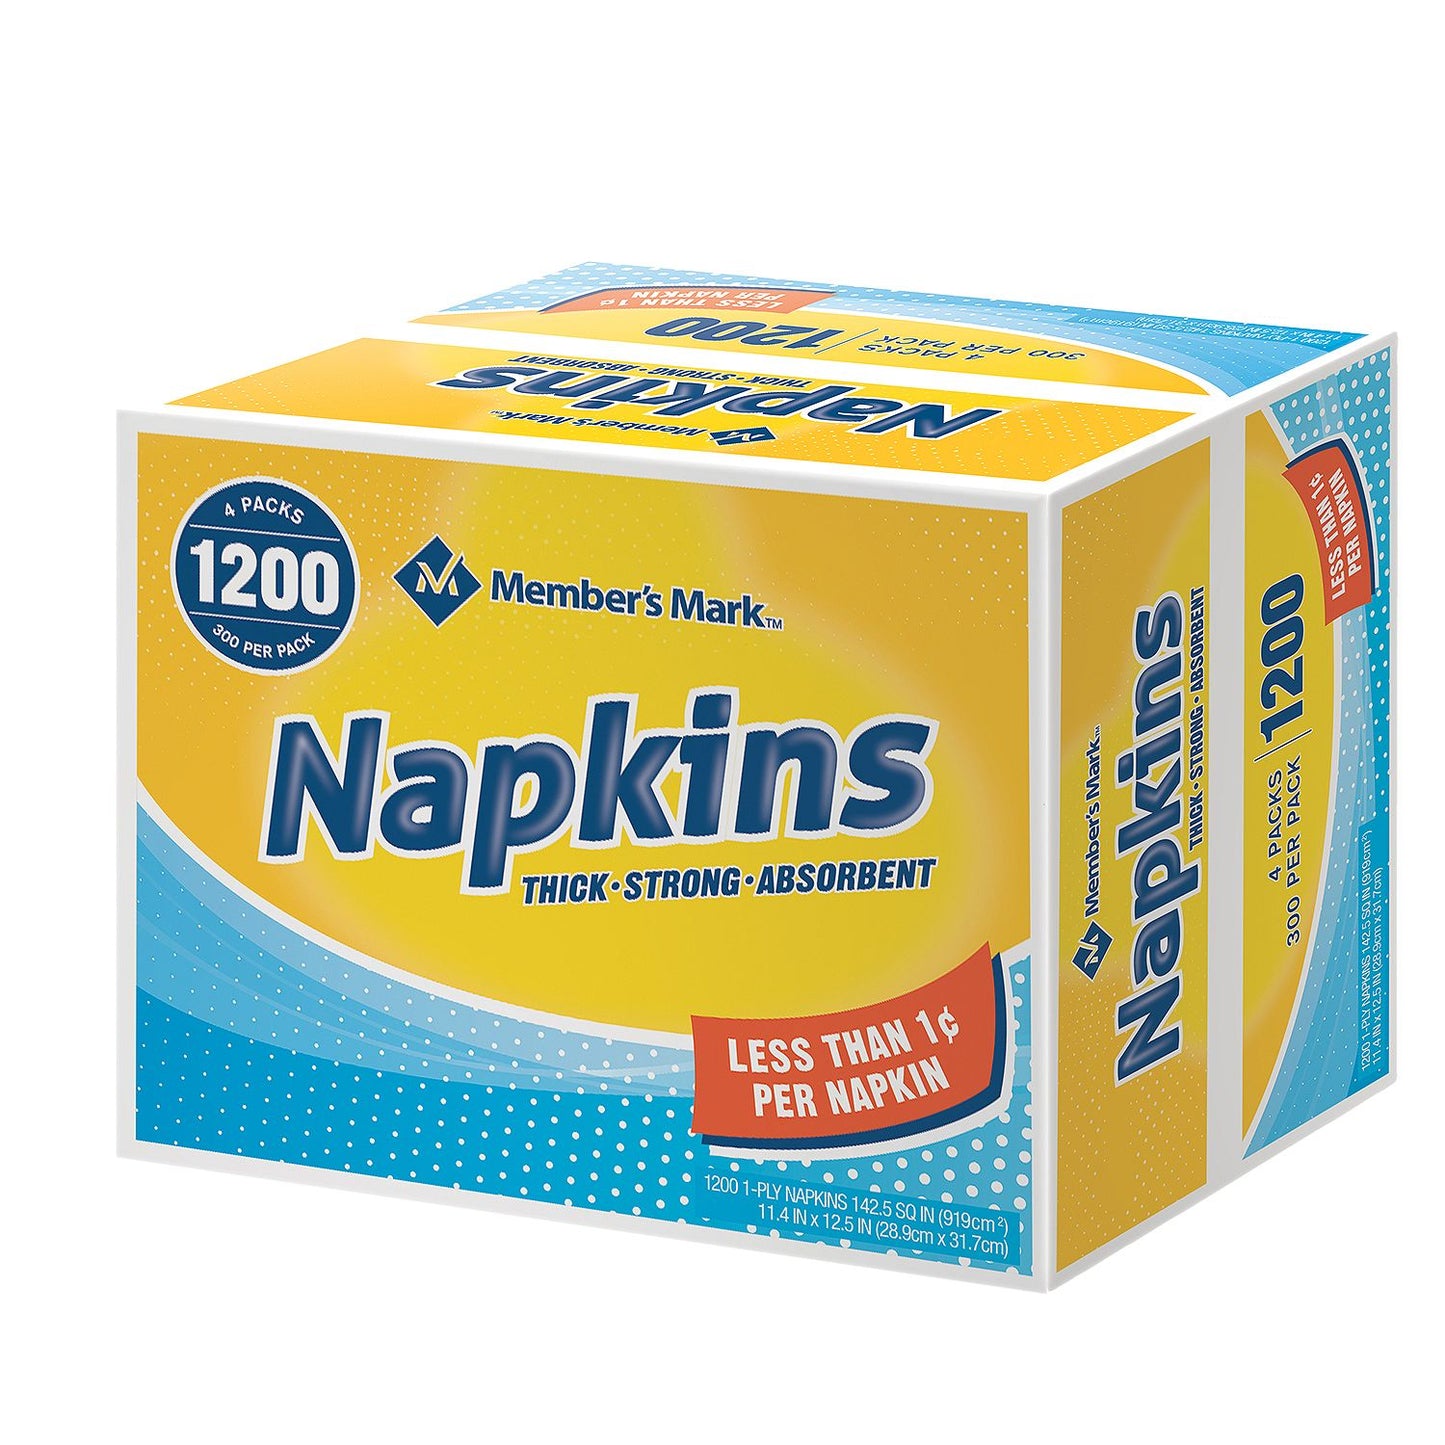 Everyday White Napkins 11.4 x 12.5 (200pk, 6pk. per ct.) 1200 Napkins